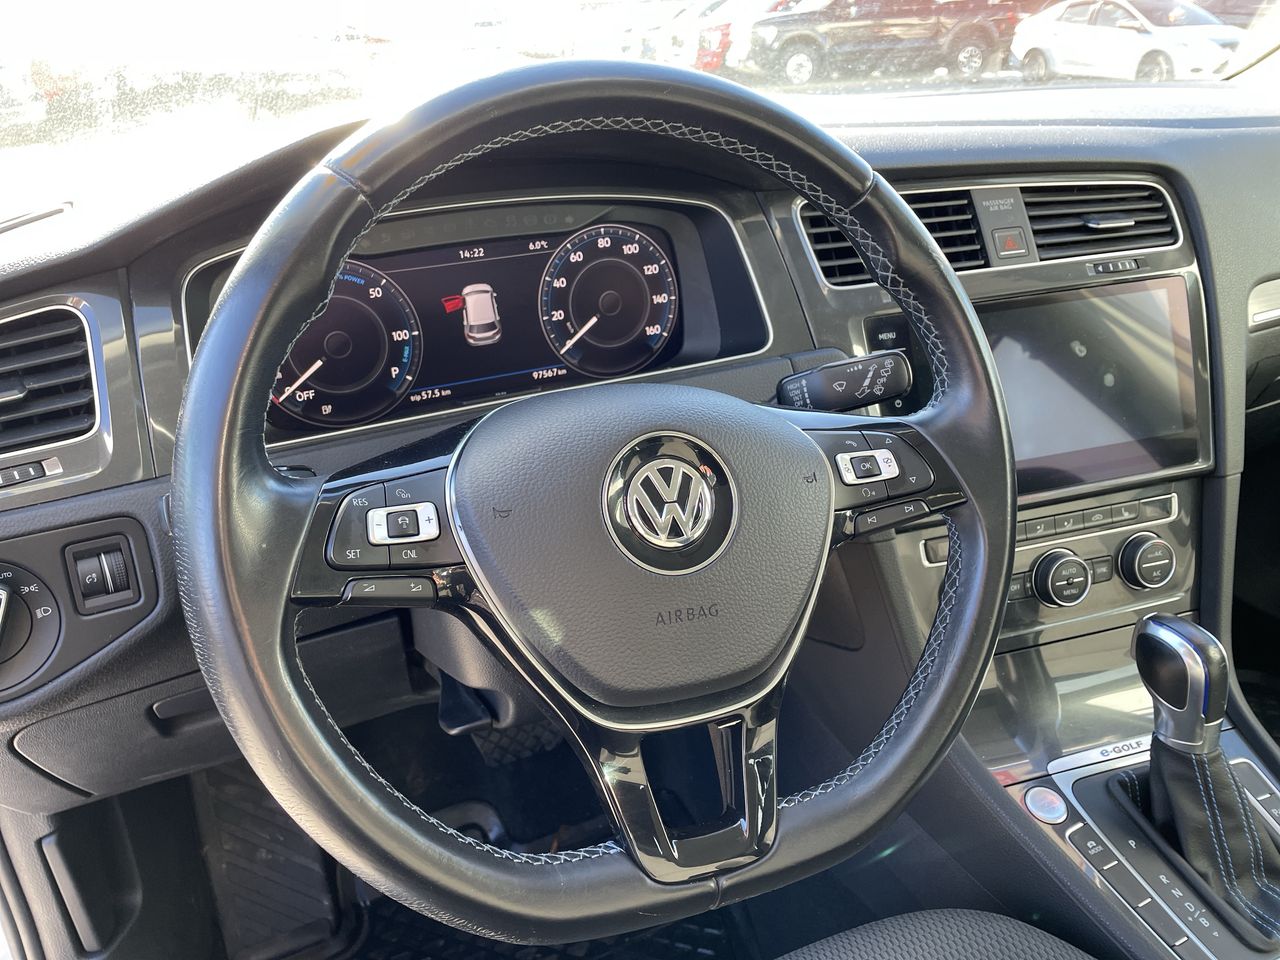 2018 Volkswagen e-Golf - P21180 Full Image 14